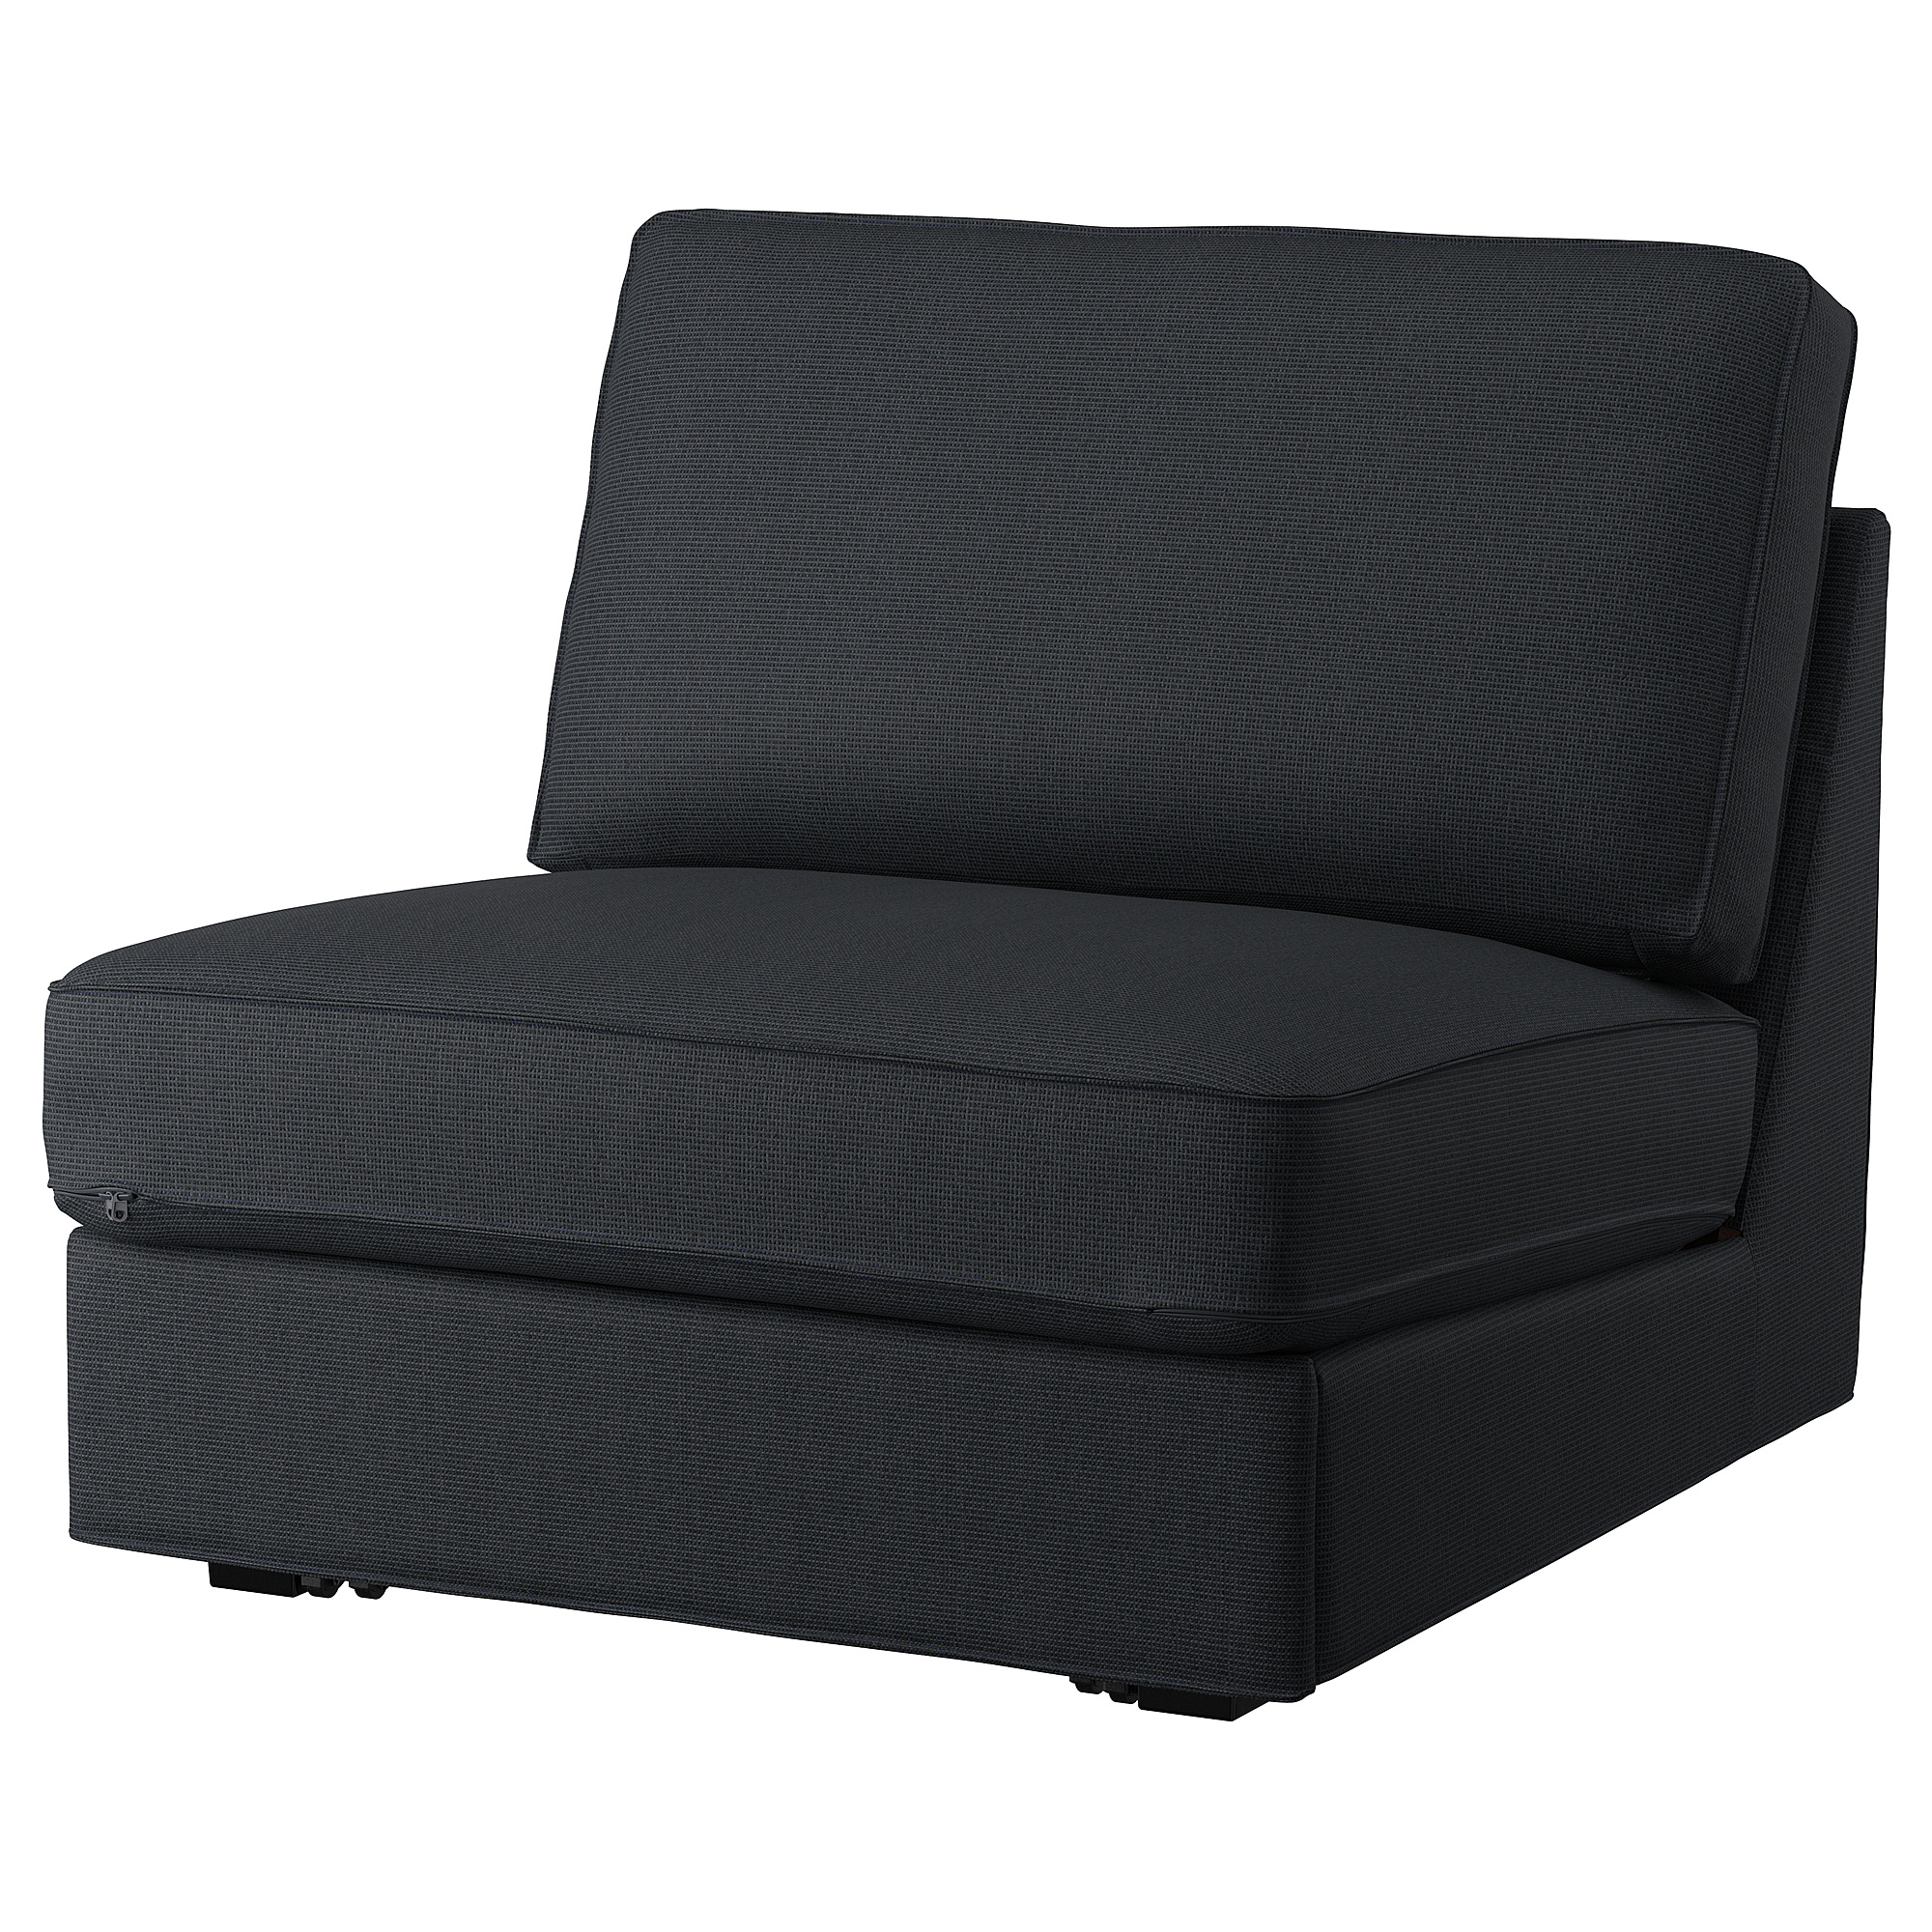 KIVIK cover for 1-seat sofa-bed